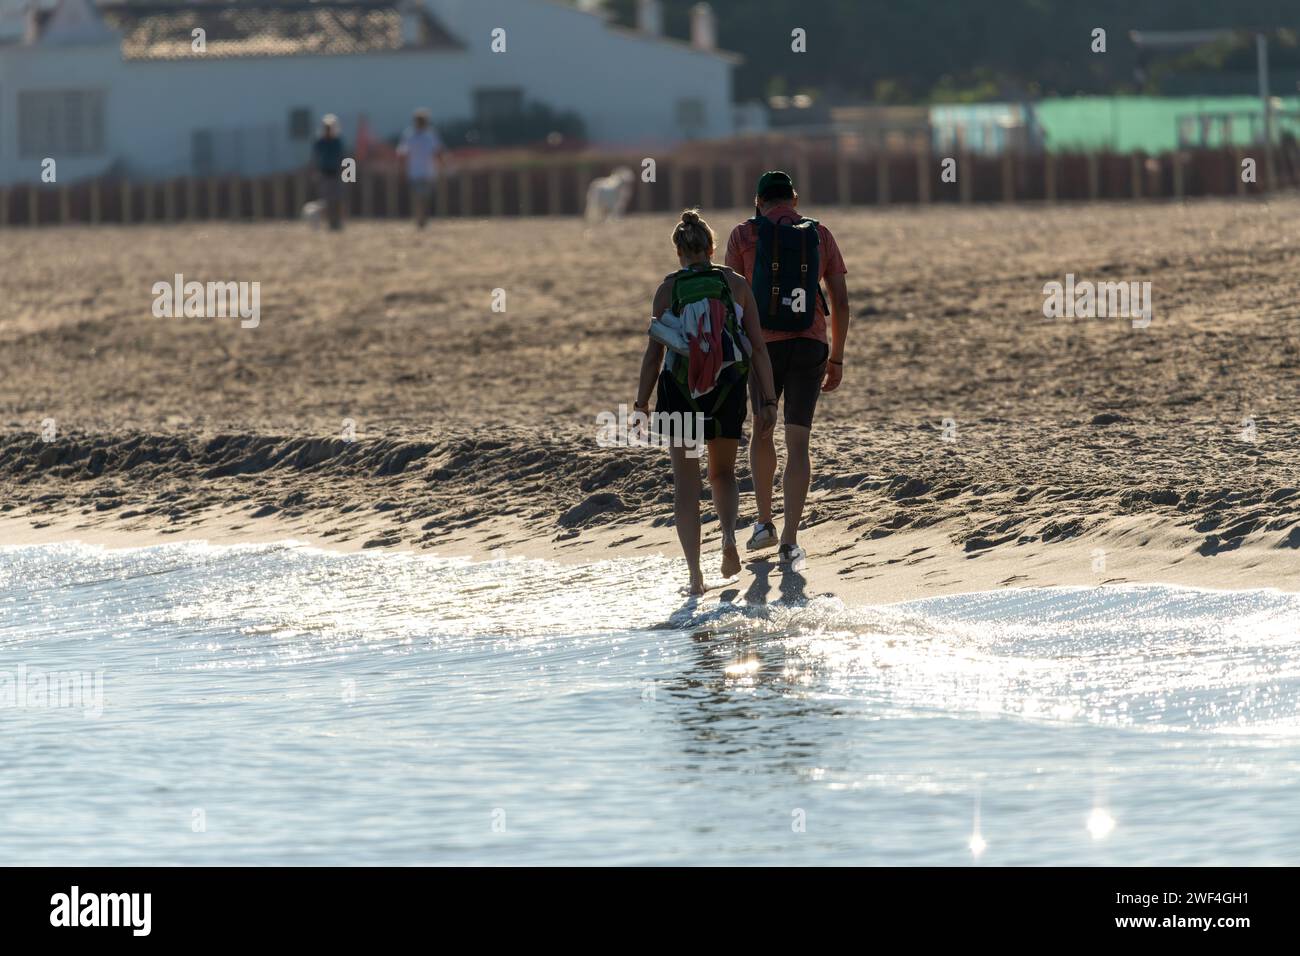 Un paio da dietro, facendo una piacevole passeggiata lungo una spiaggia. Il mare sta creando una leggera onda e la foto è stata scattata in controluce. Foto Stock